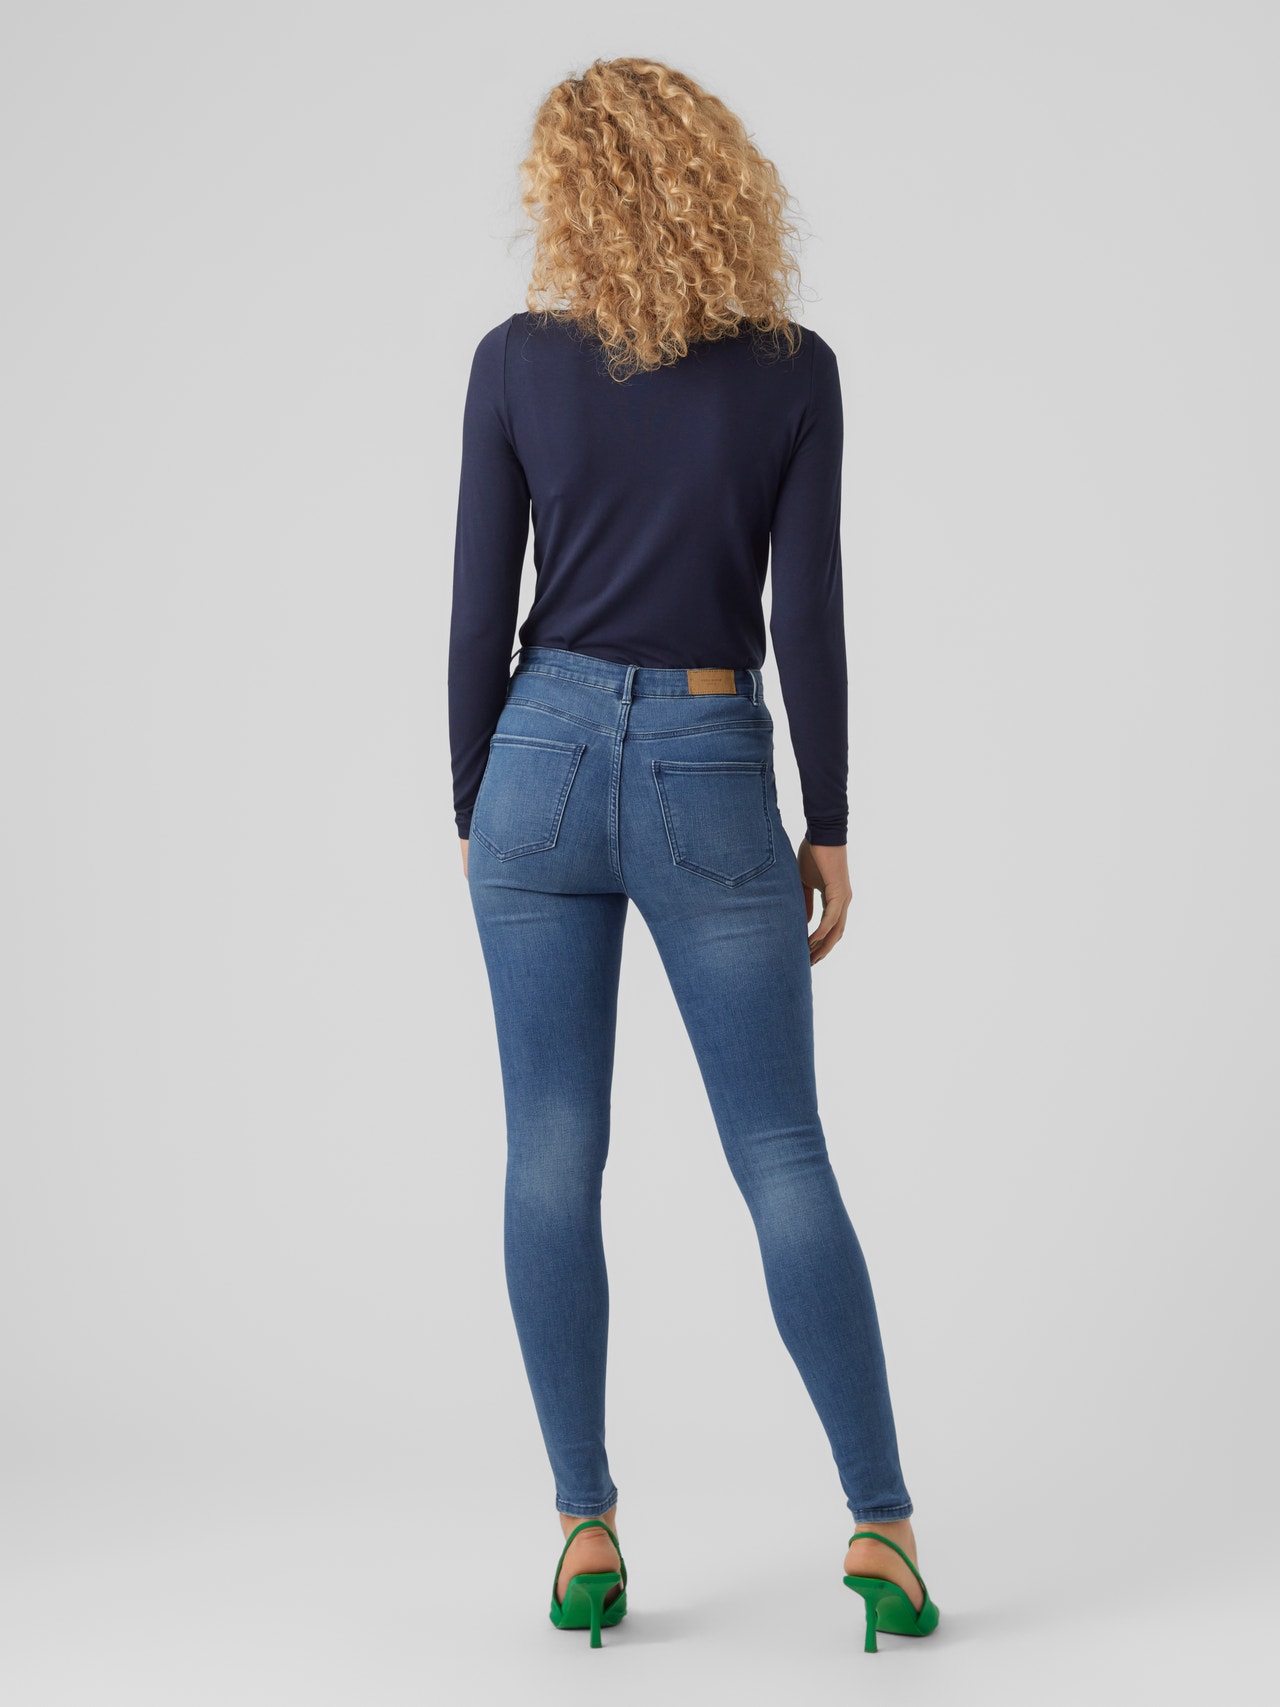 Vero Moda VMSOPHIA Skinny Fit Jeans -Medium Blue Denim - 10275356